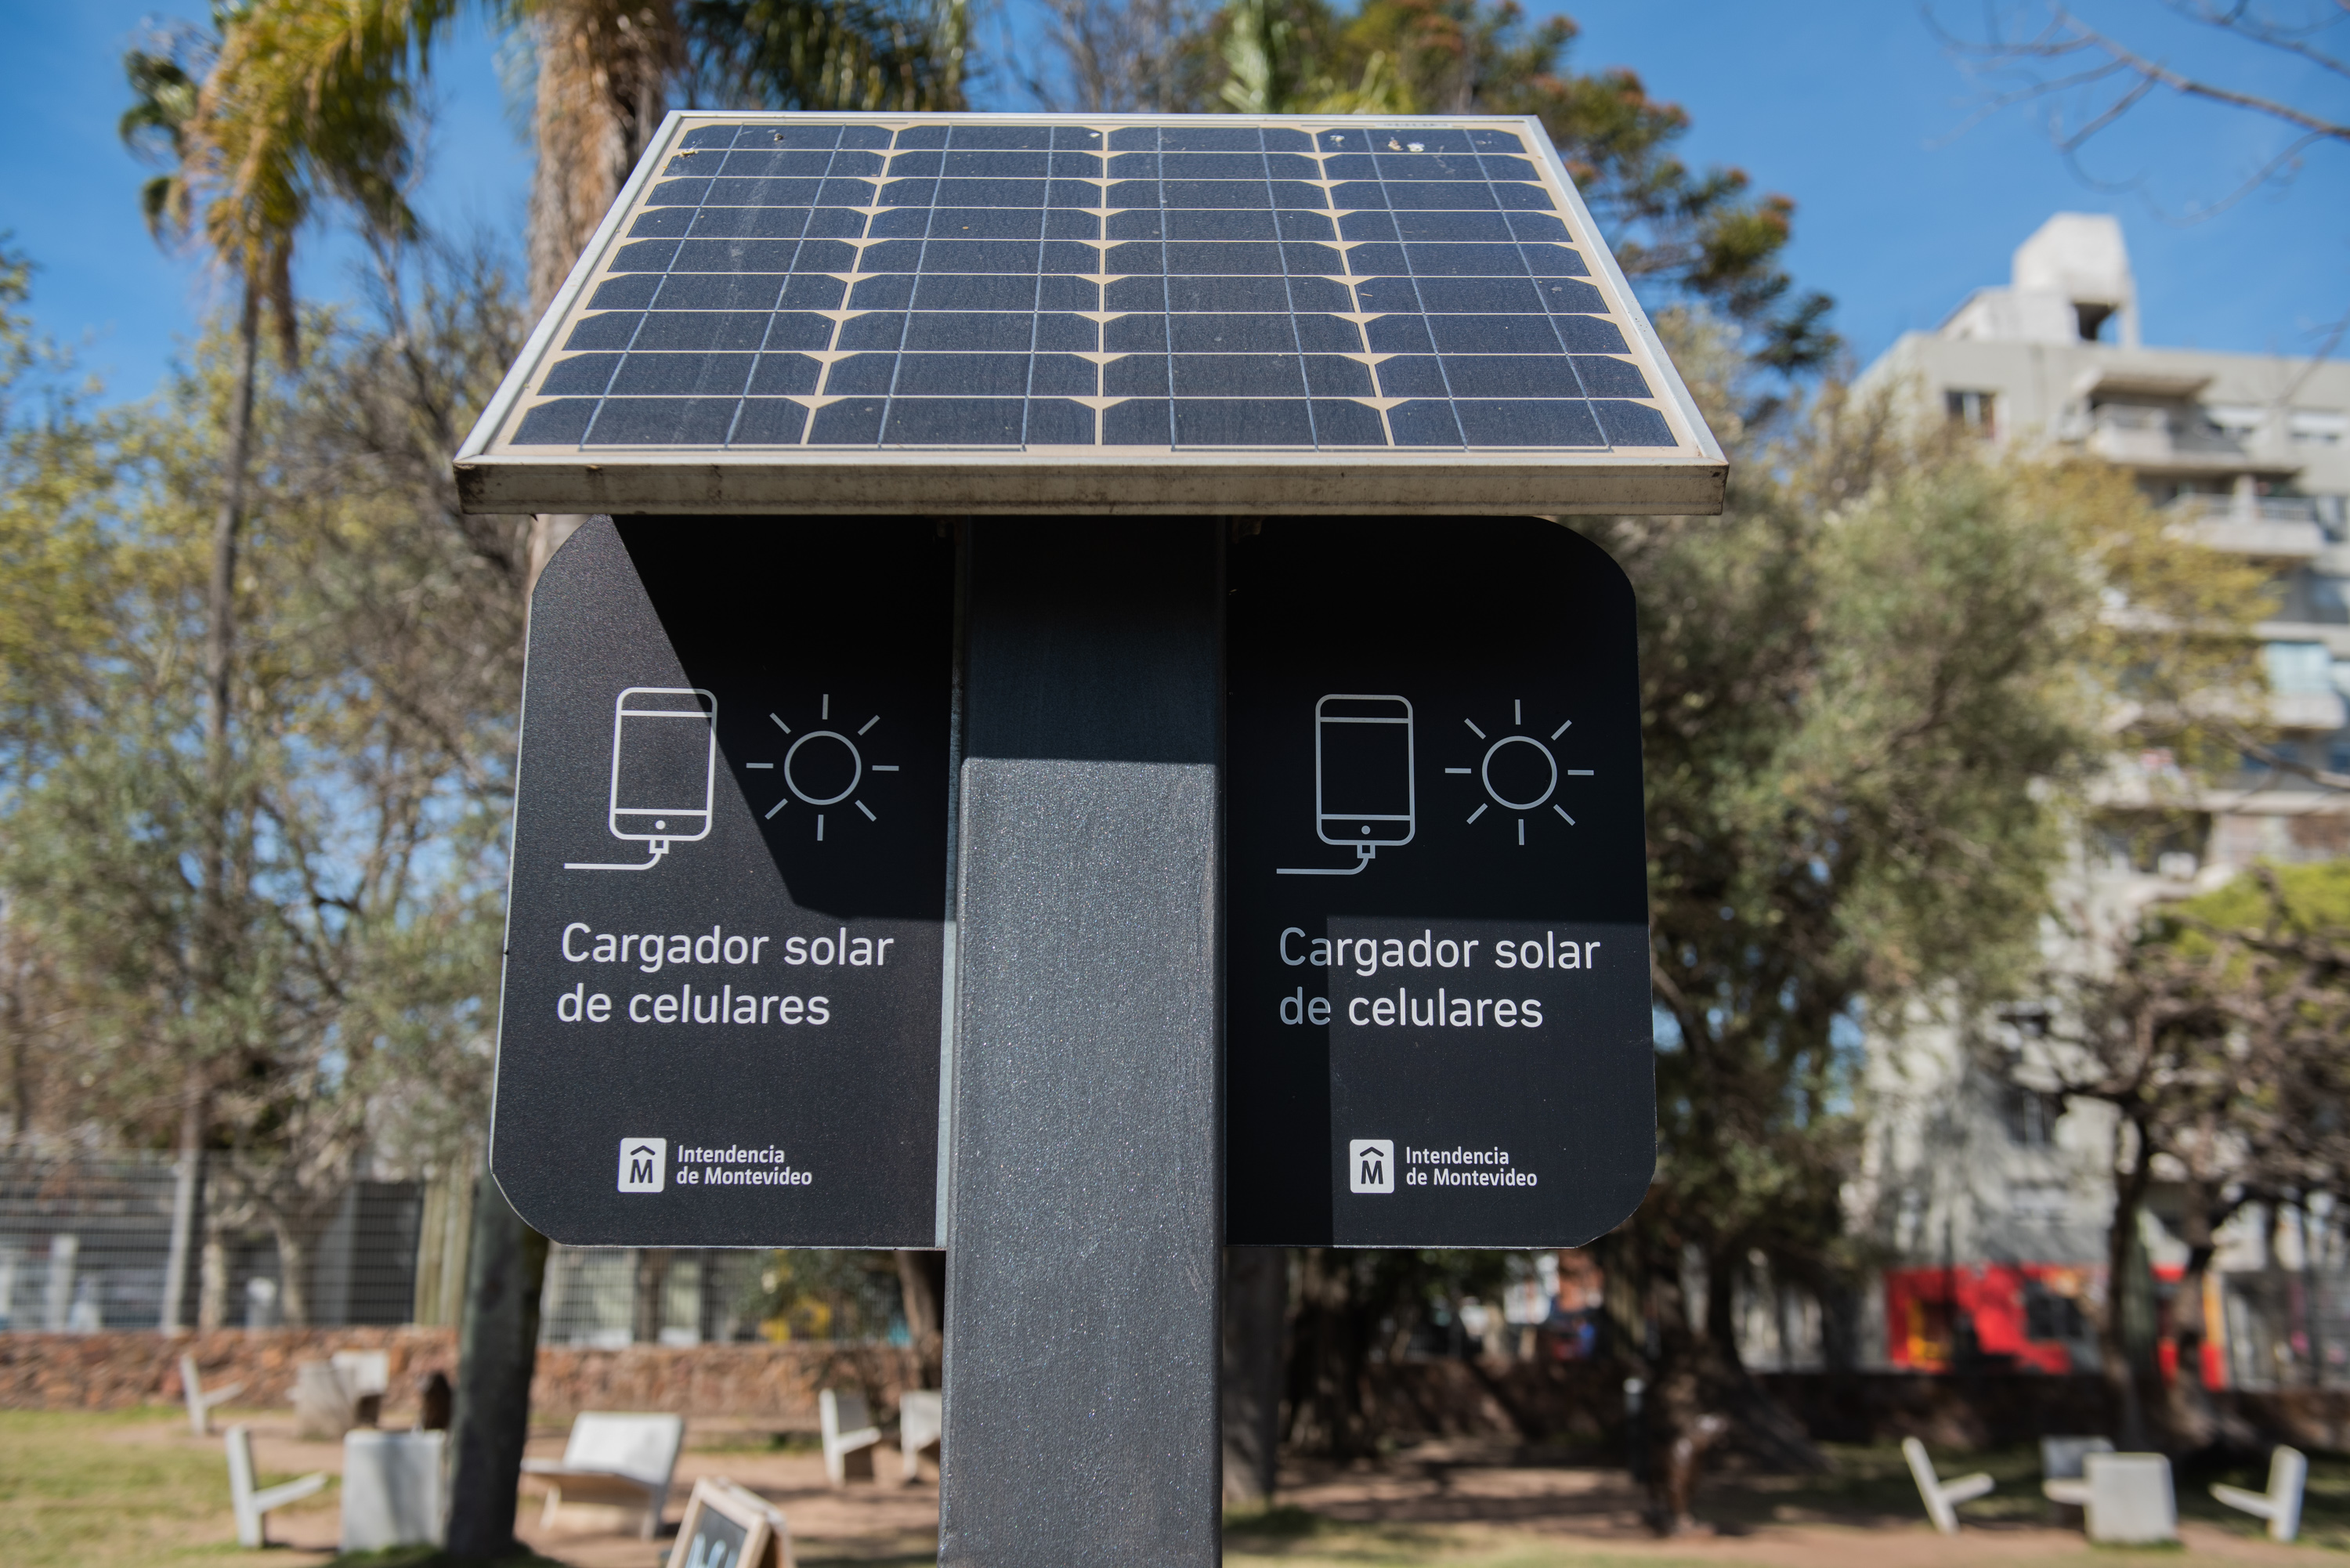 Cargador solar de celulares en el parque Villa Dolores